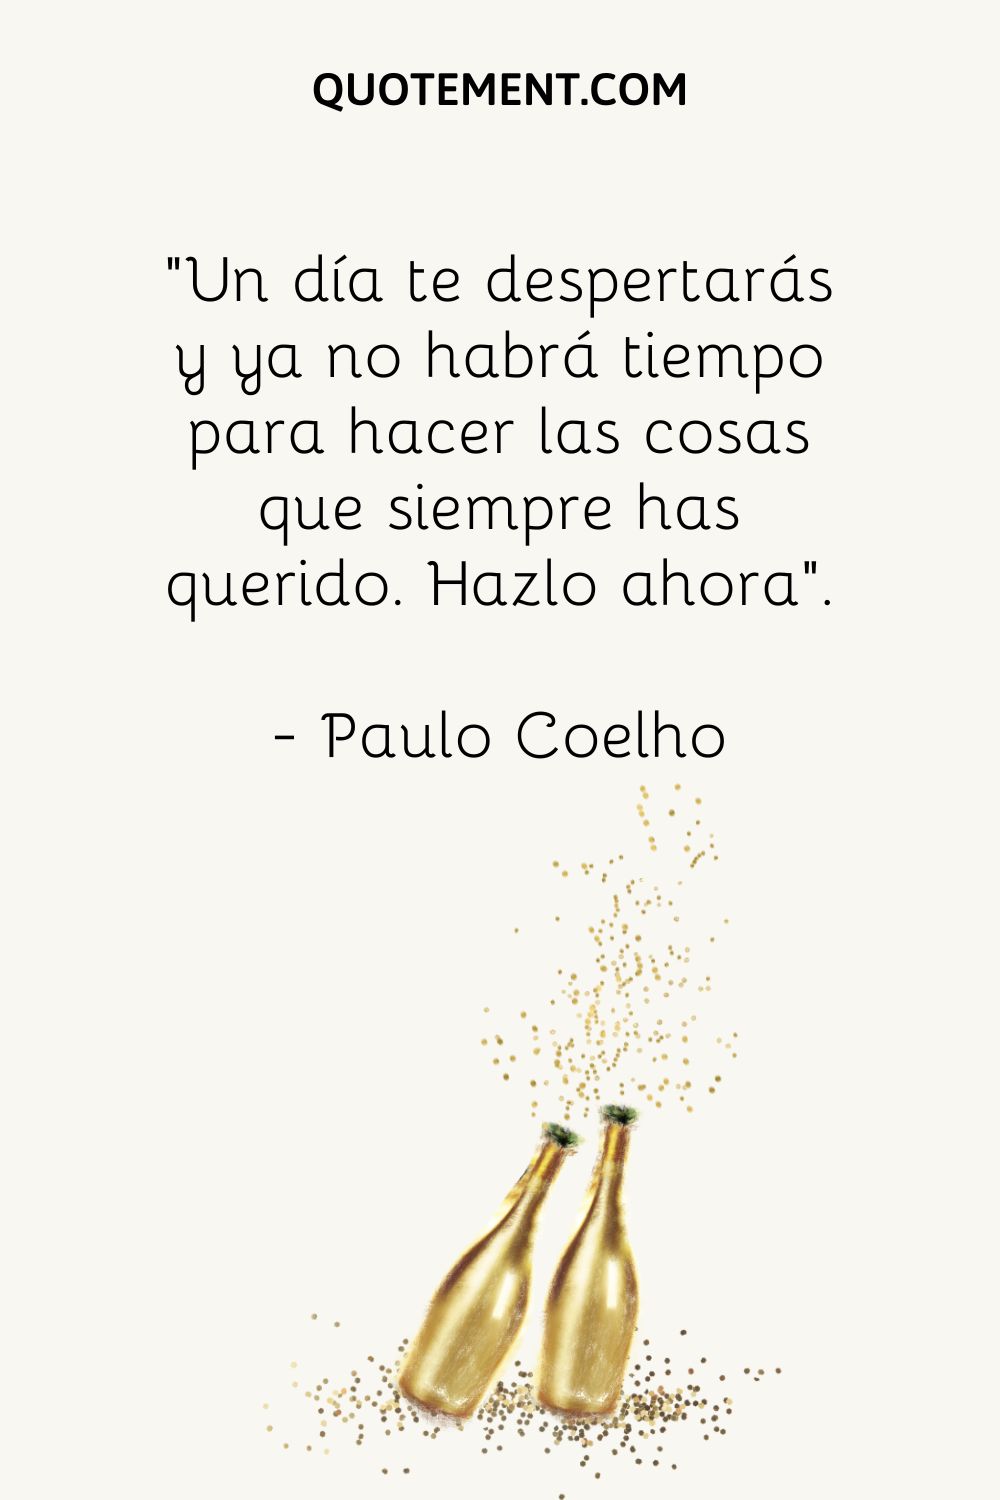 "Un día, te despertarás y ya no habrá tiempo para hacer las cosas que siempre has querido. Hazlo ahora". - Paolo Coelho